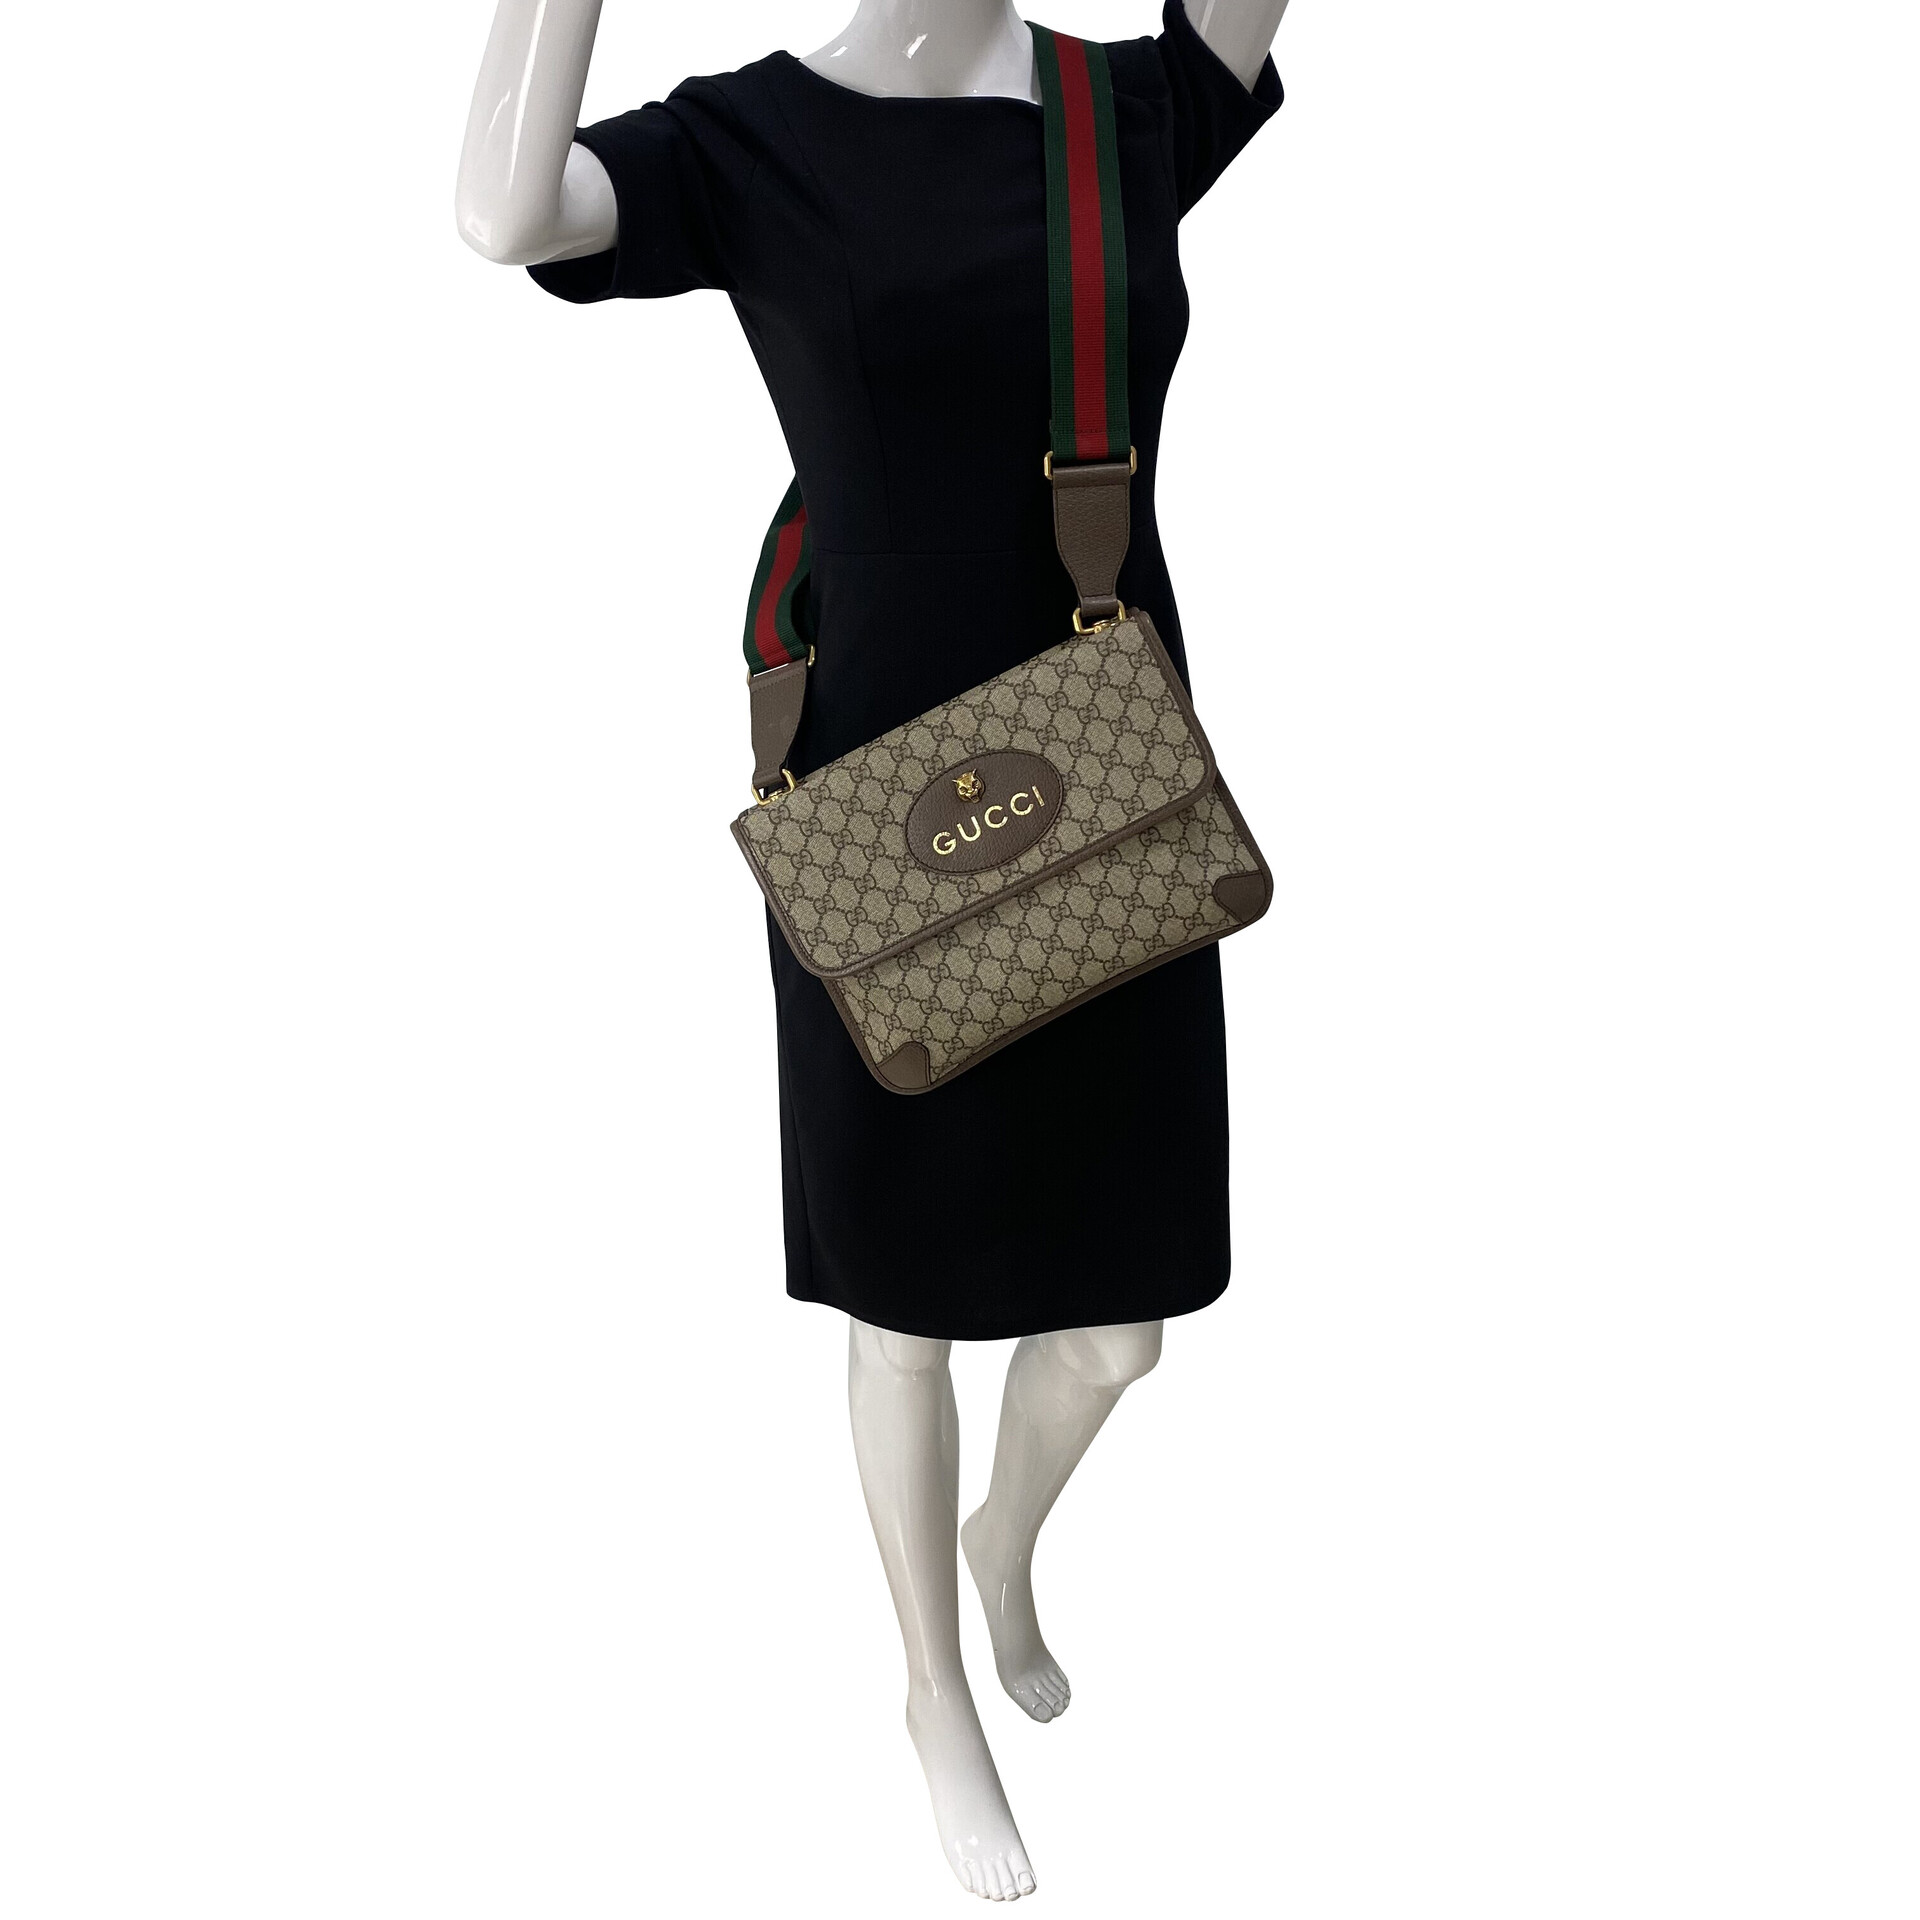 Dress & Go  Bolsa Louis Vuitton com alça dupla - DG53137